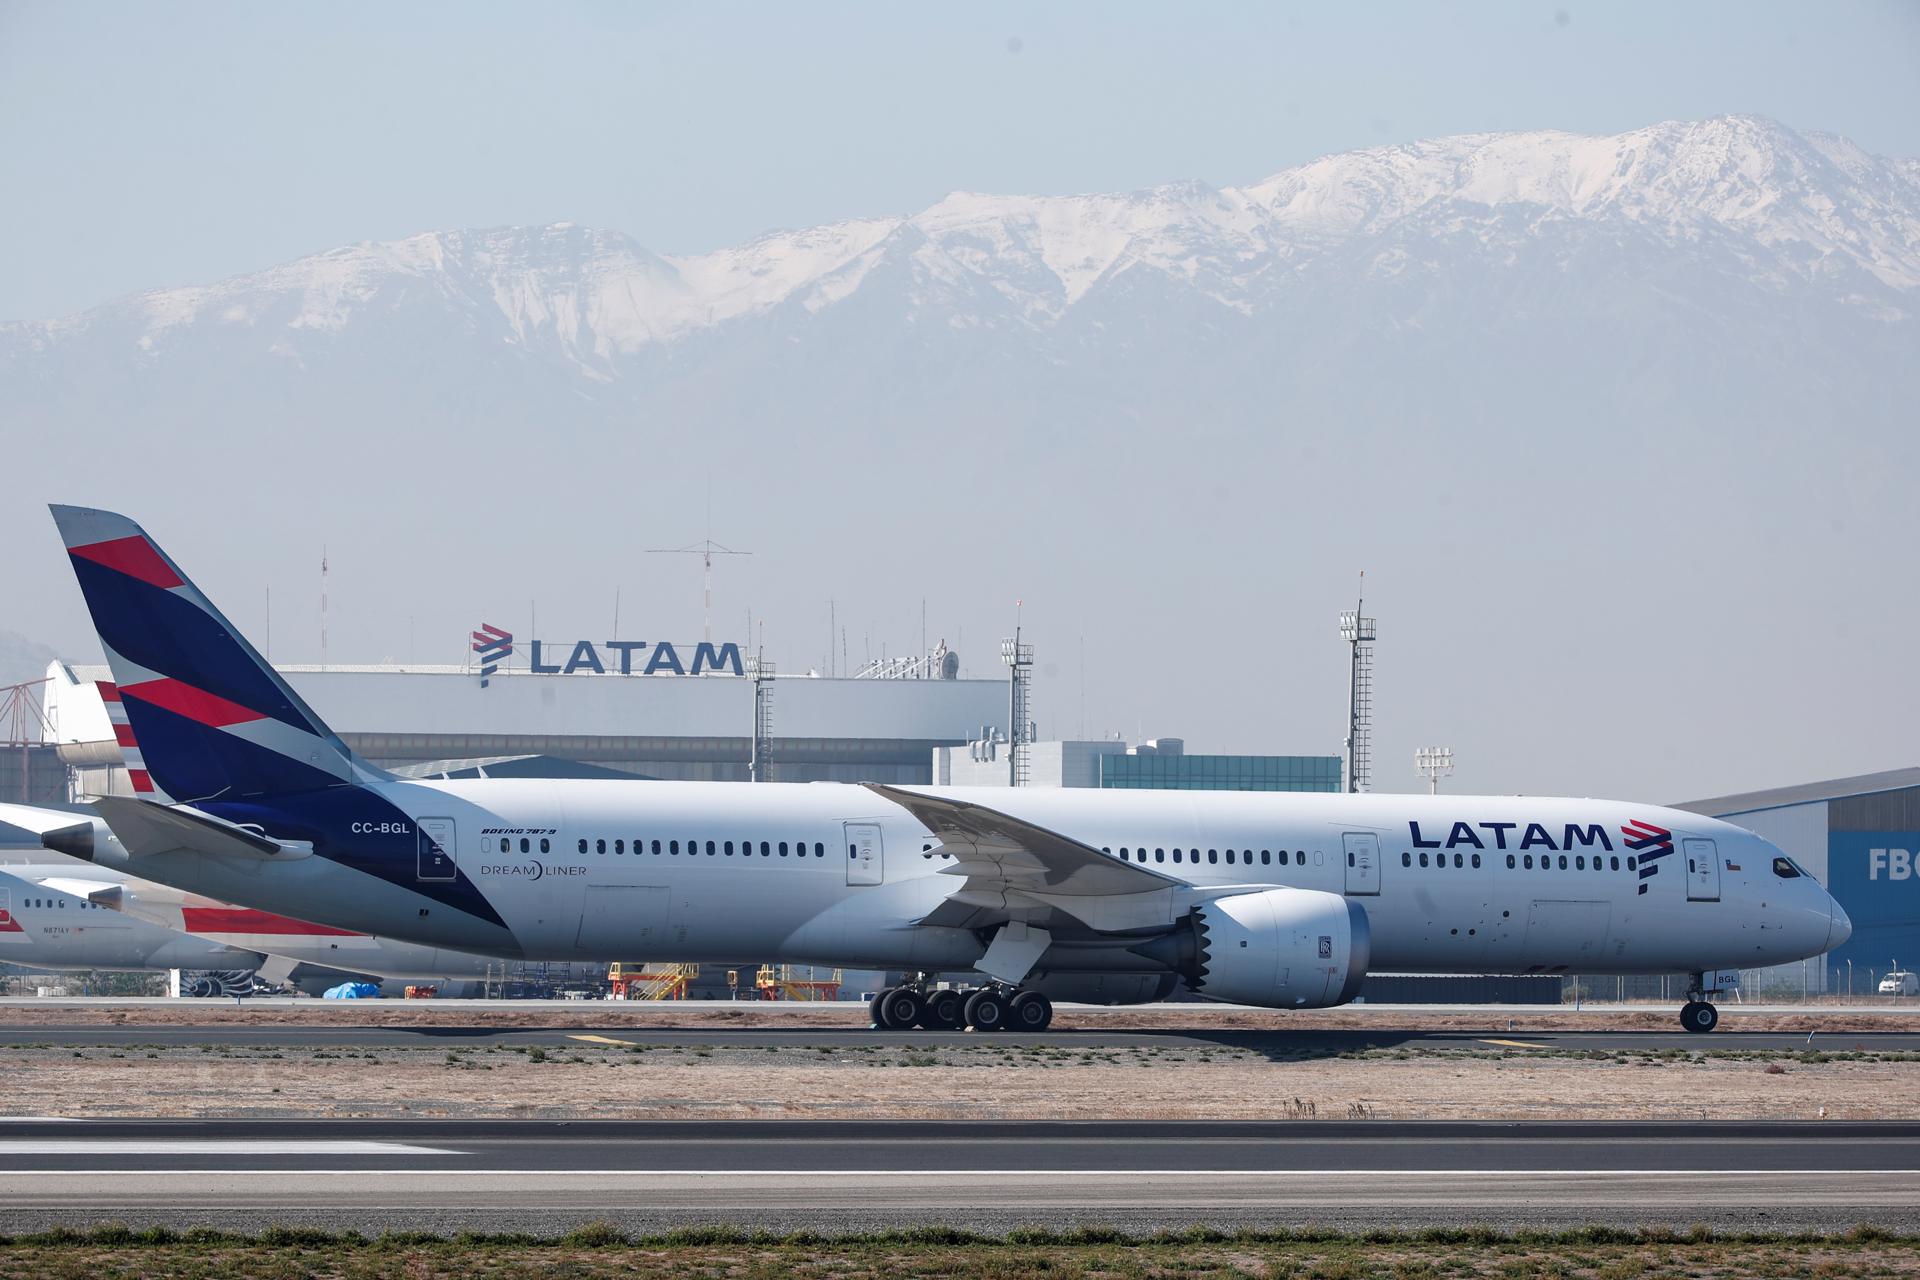 Latam Ecuador lanzó un programa para que los pasajeros puedan compensar huella de carbono